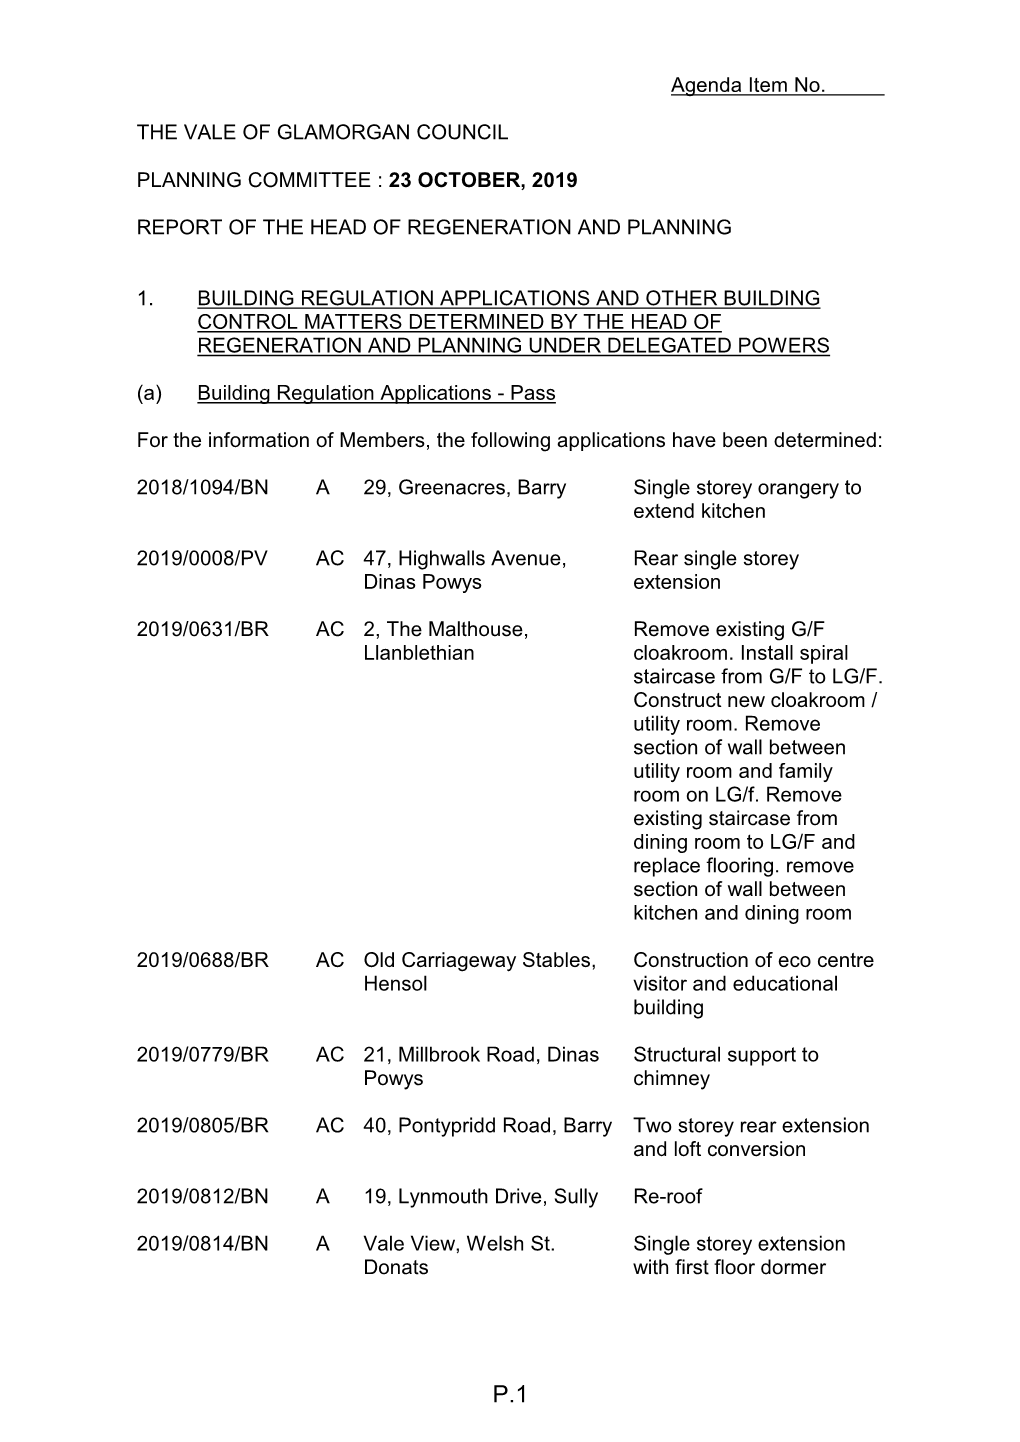 Planning Committee Agenda 23 October 2019